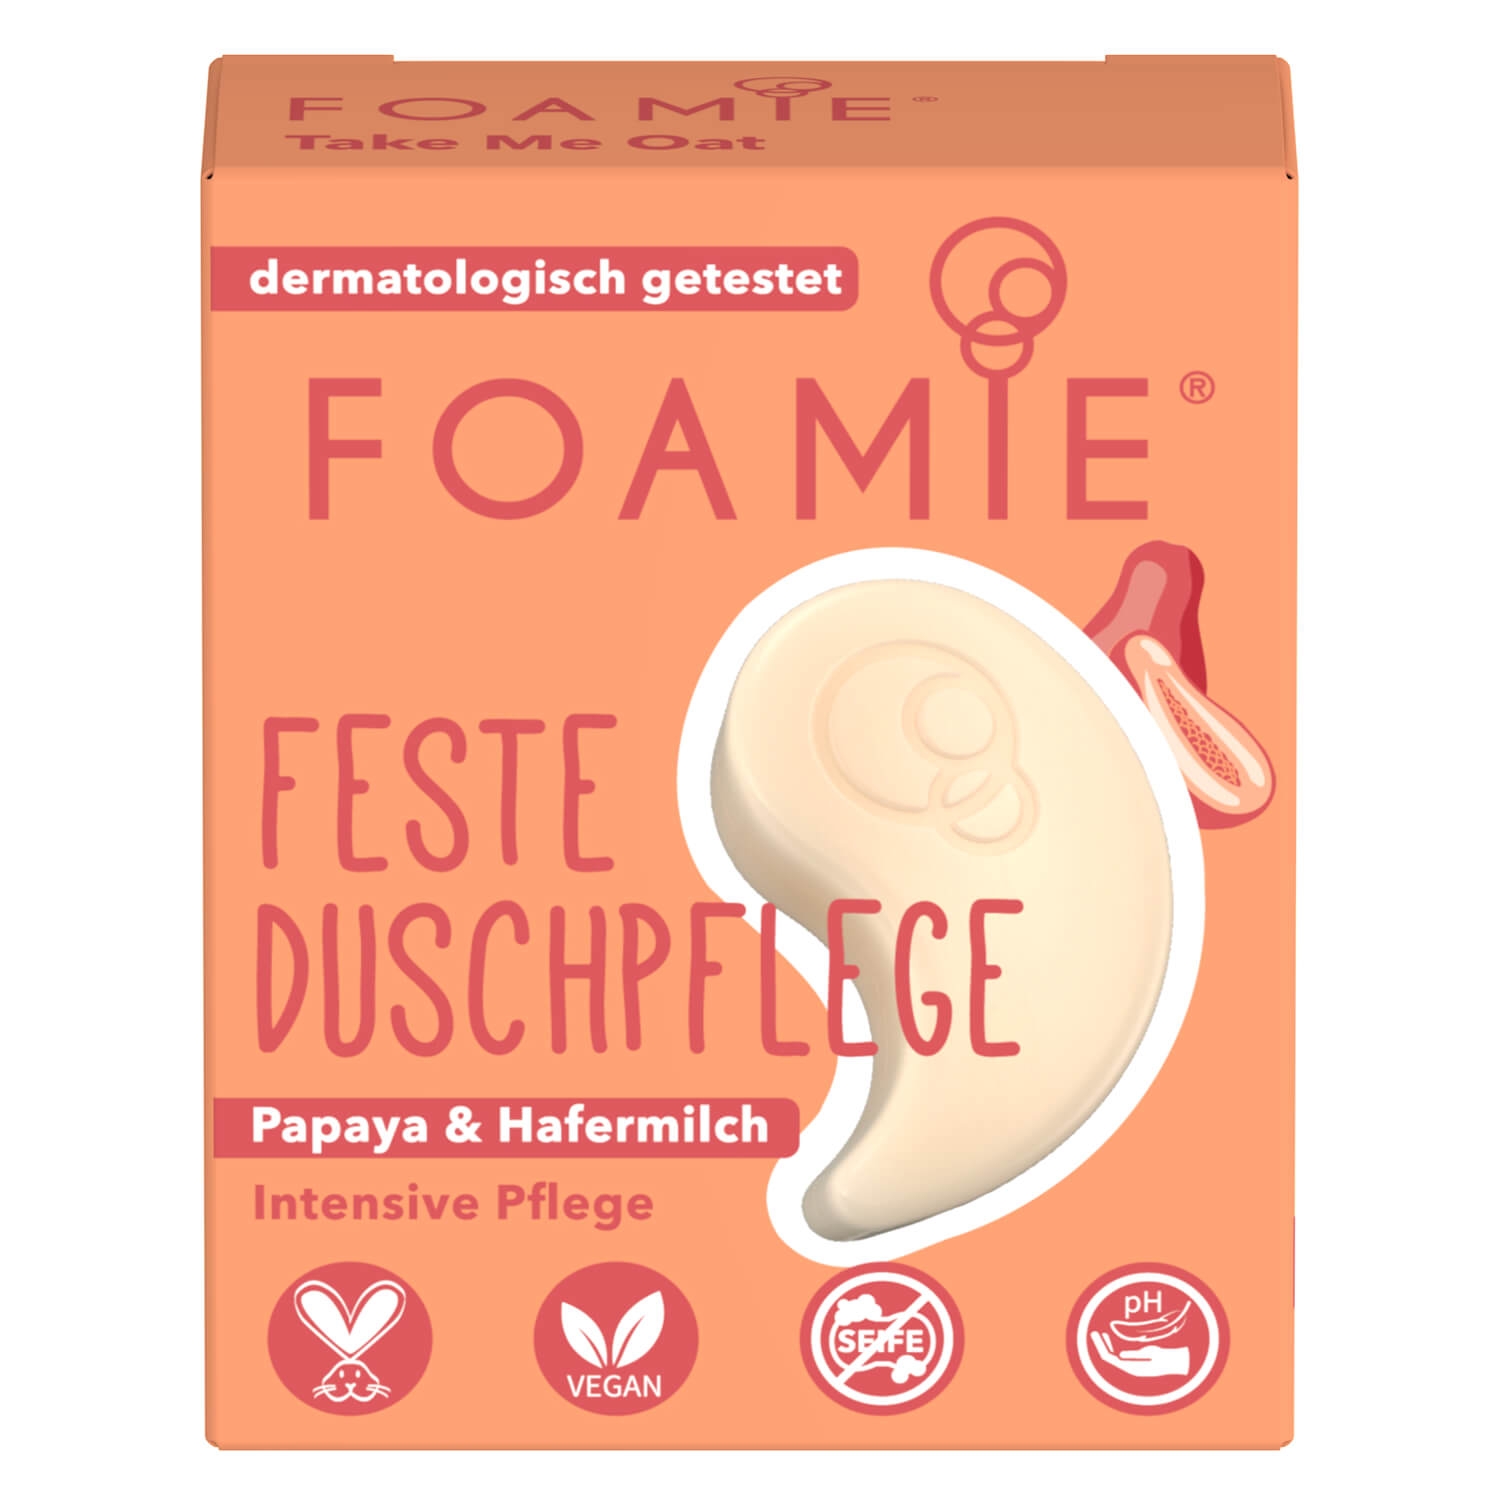 Product image from Foamie - Feste Duschpflege Take Me Oat Travel